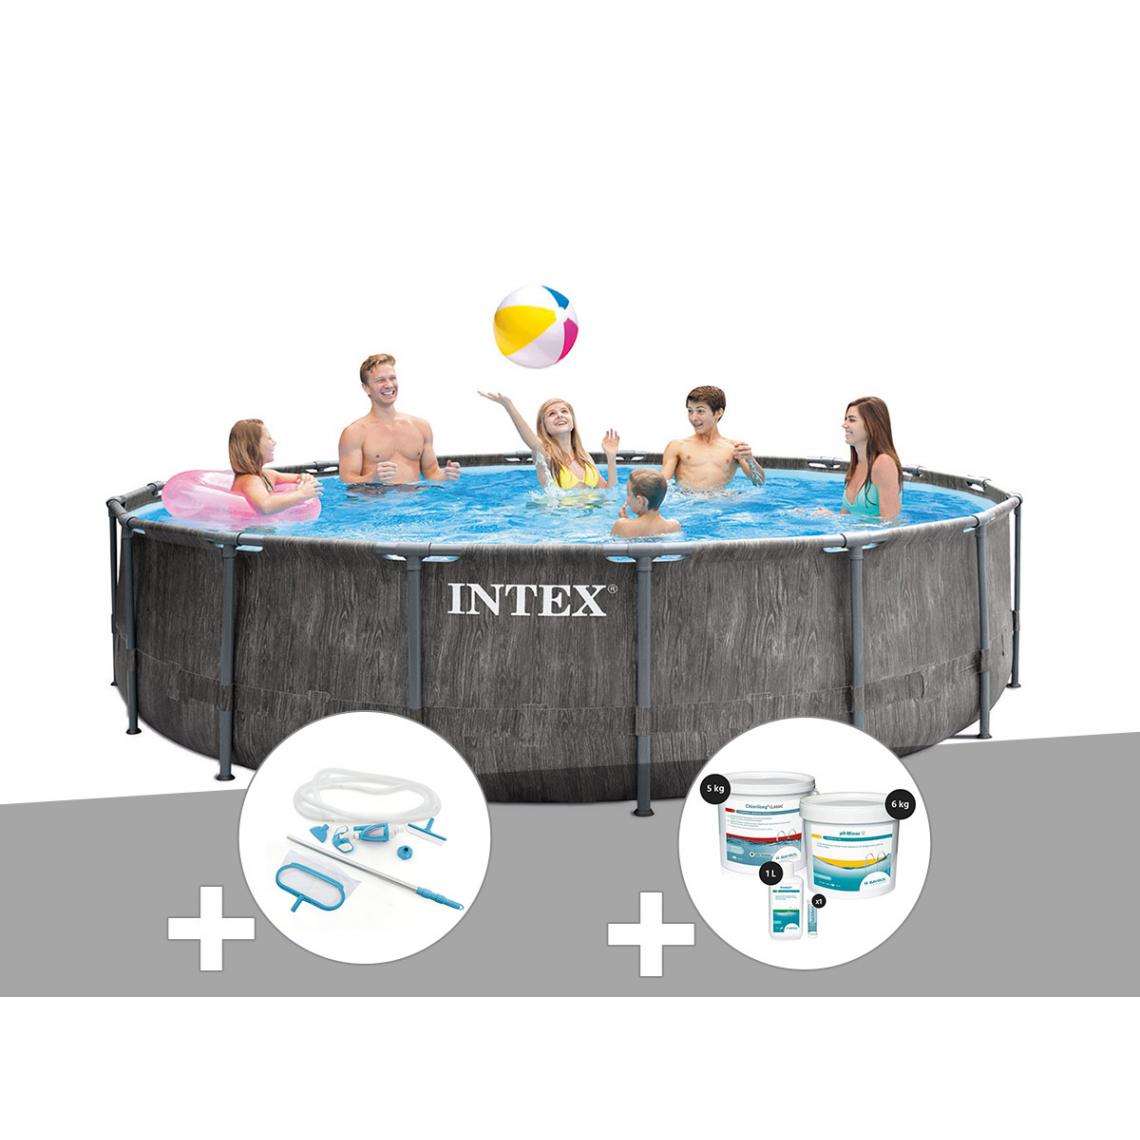 Intex - Kit piscine tubulaire Intex Baltik ronde 4,57 x 1,22 m + Kit d'entretien + Kit de traitement au chlore - Piscine Tubulaire